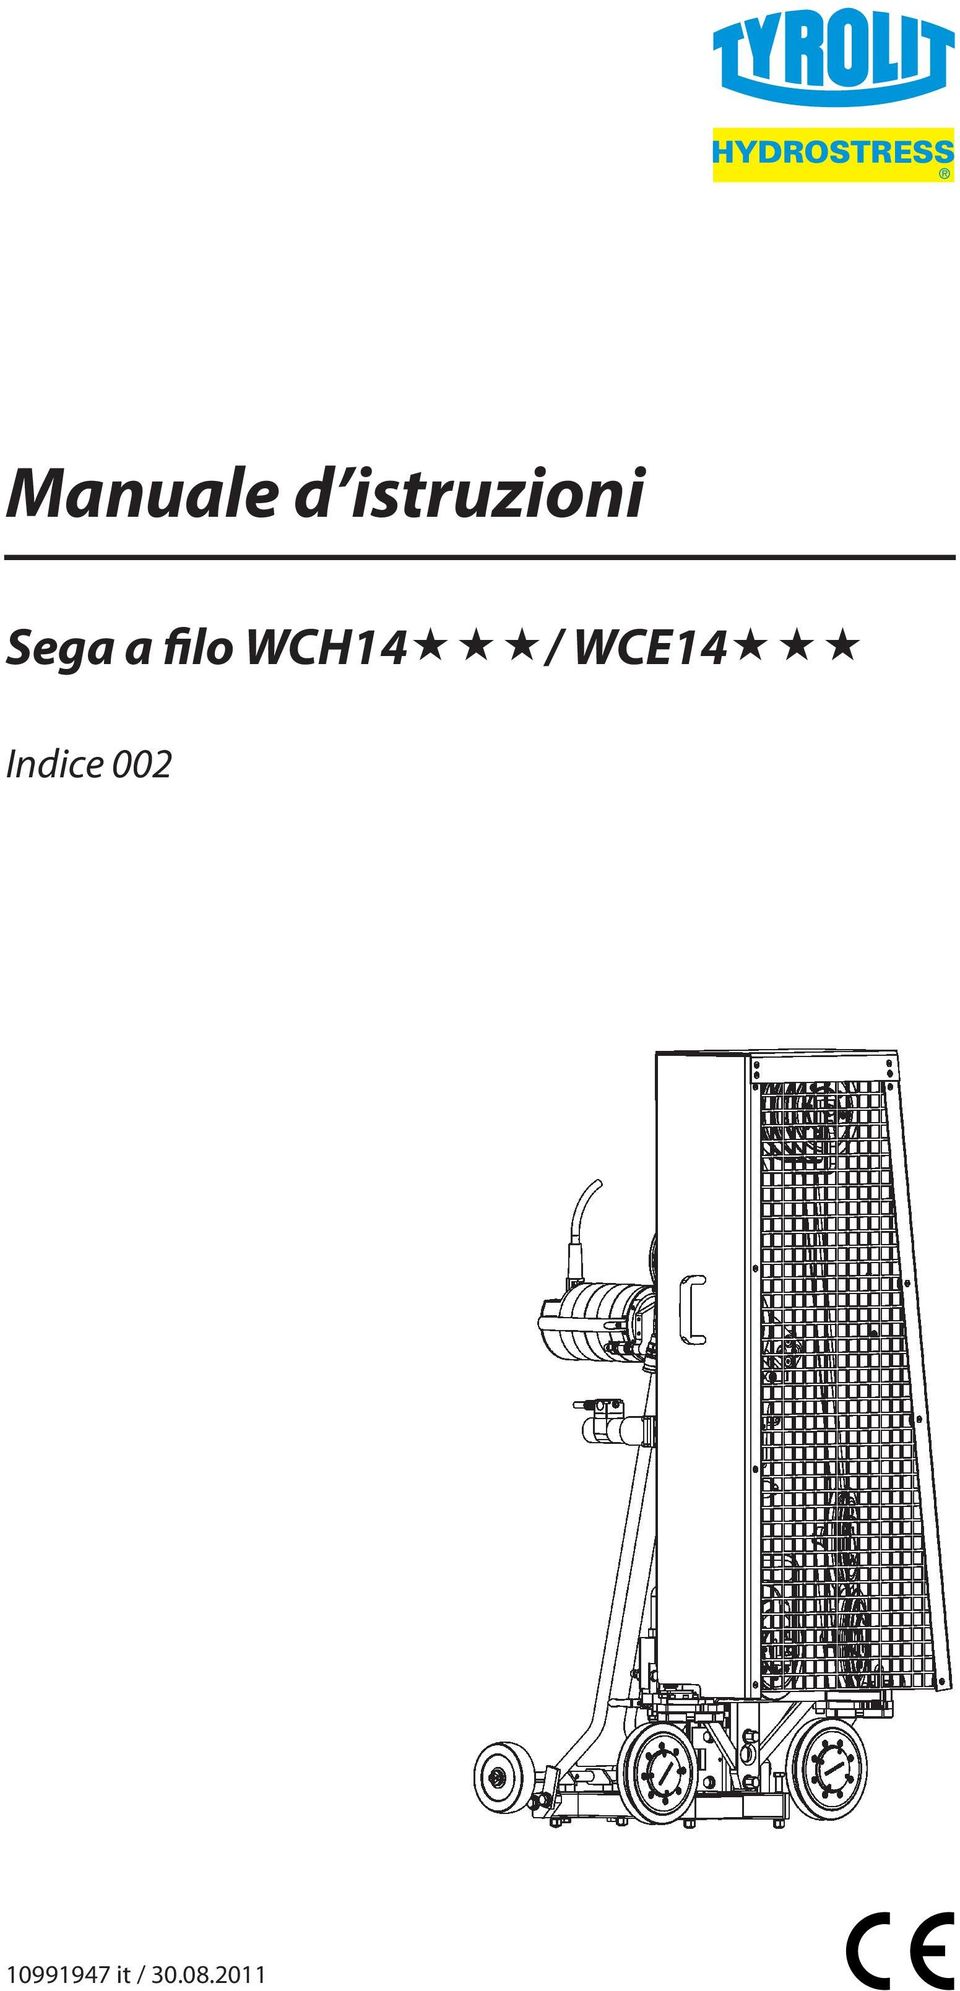 WCE14 Indice 002